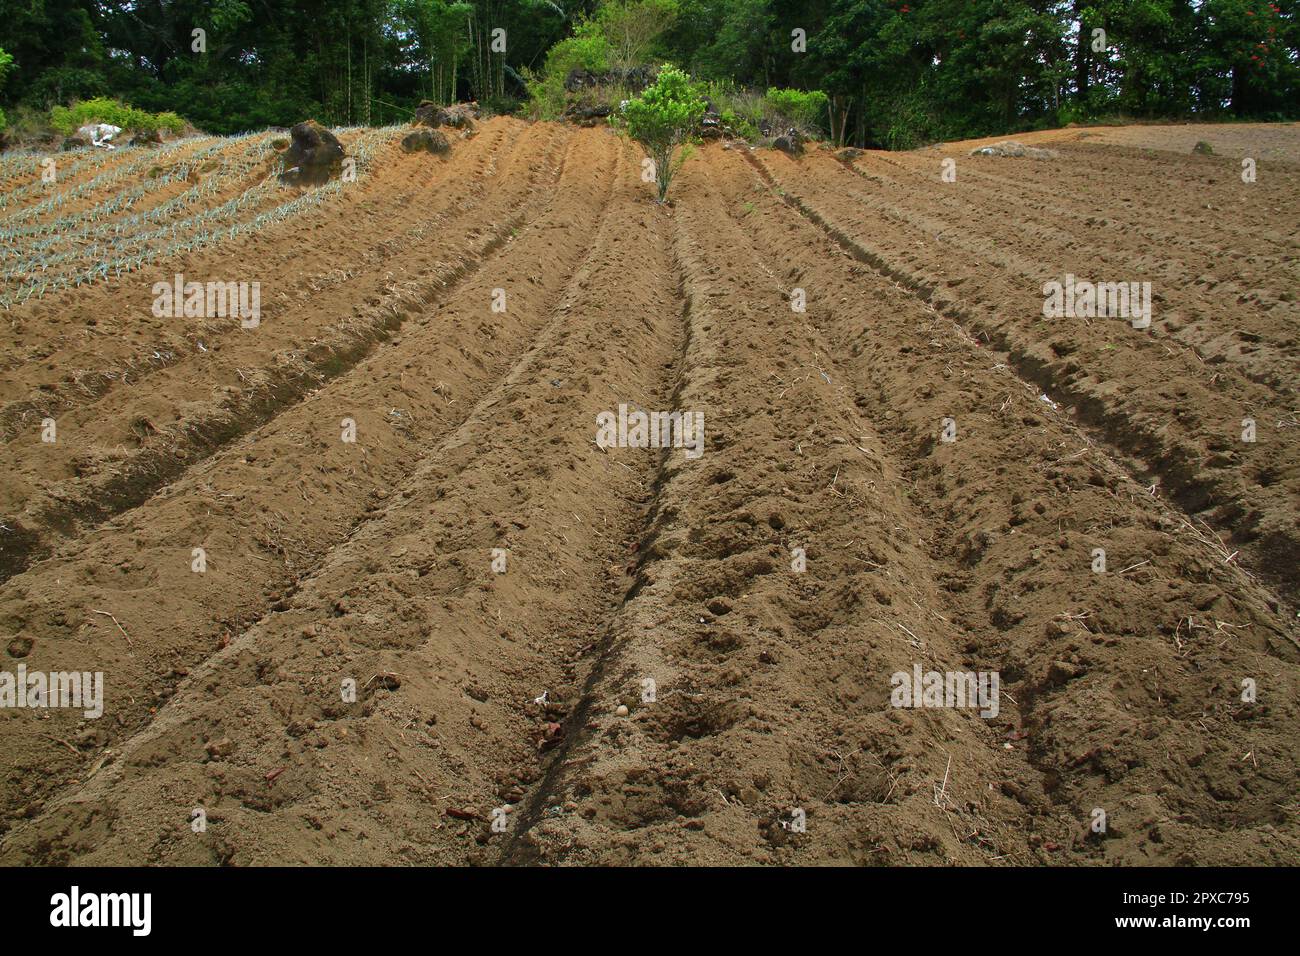 La parcelle de terre est prête à être plantée avec des légumes Banque D'Images